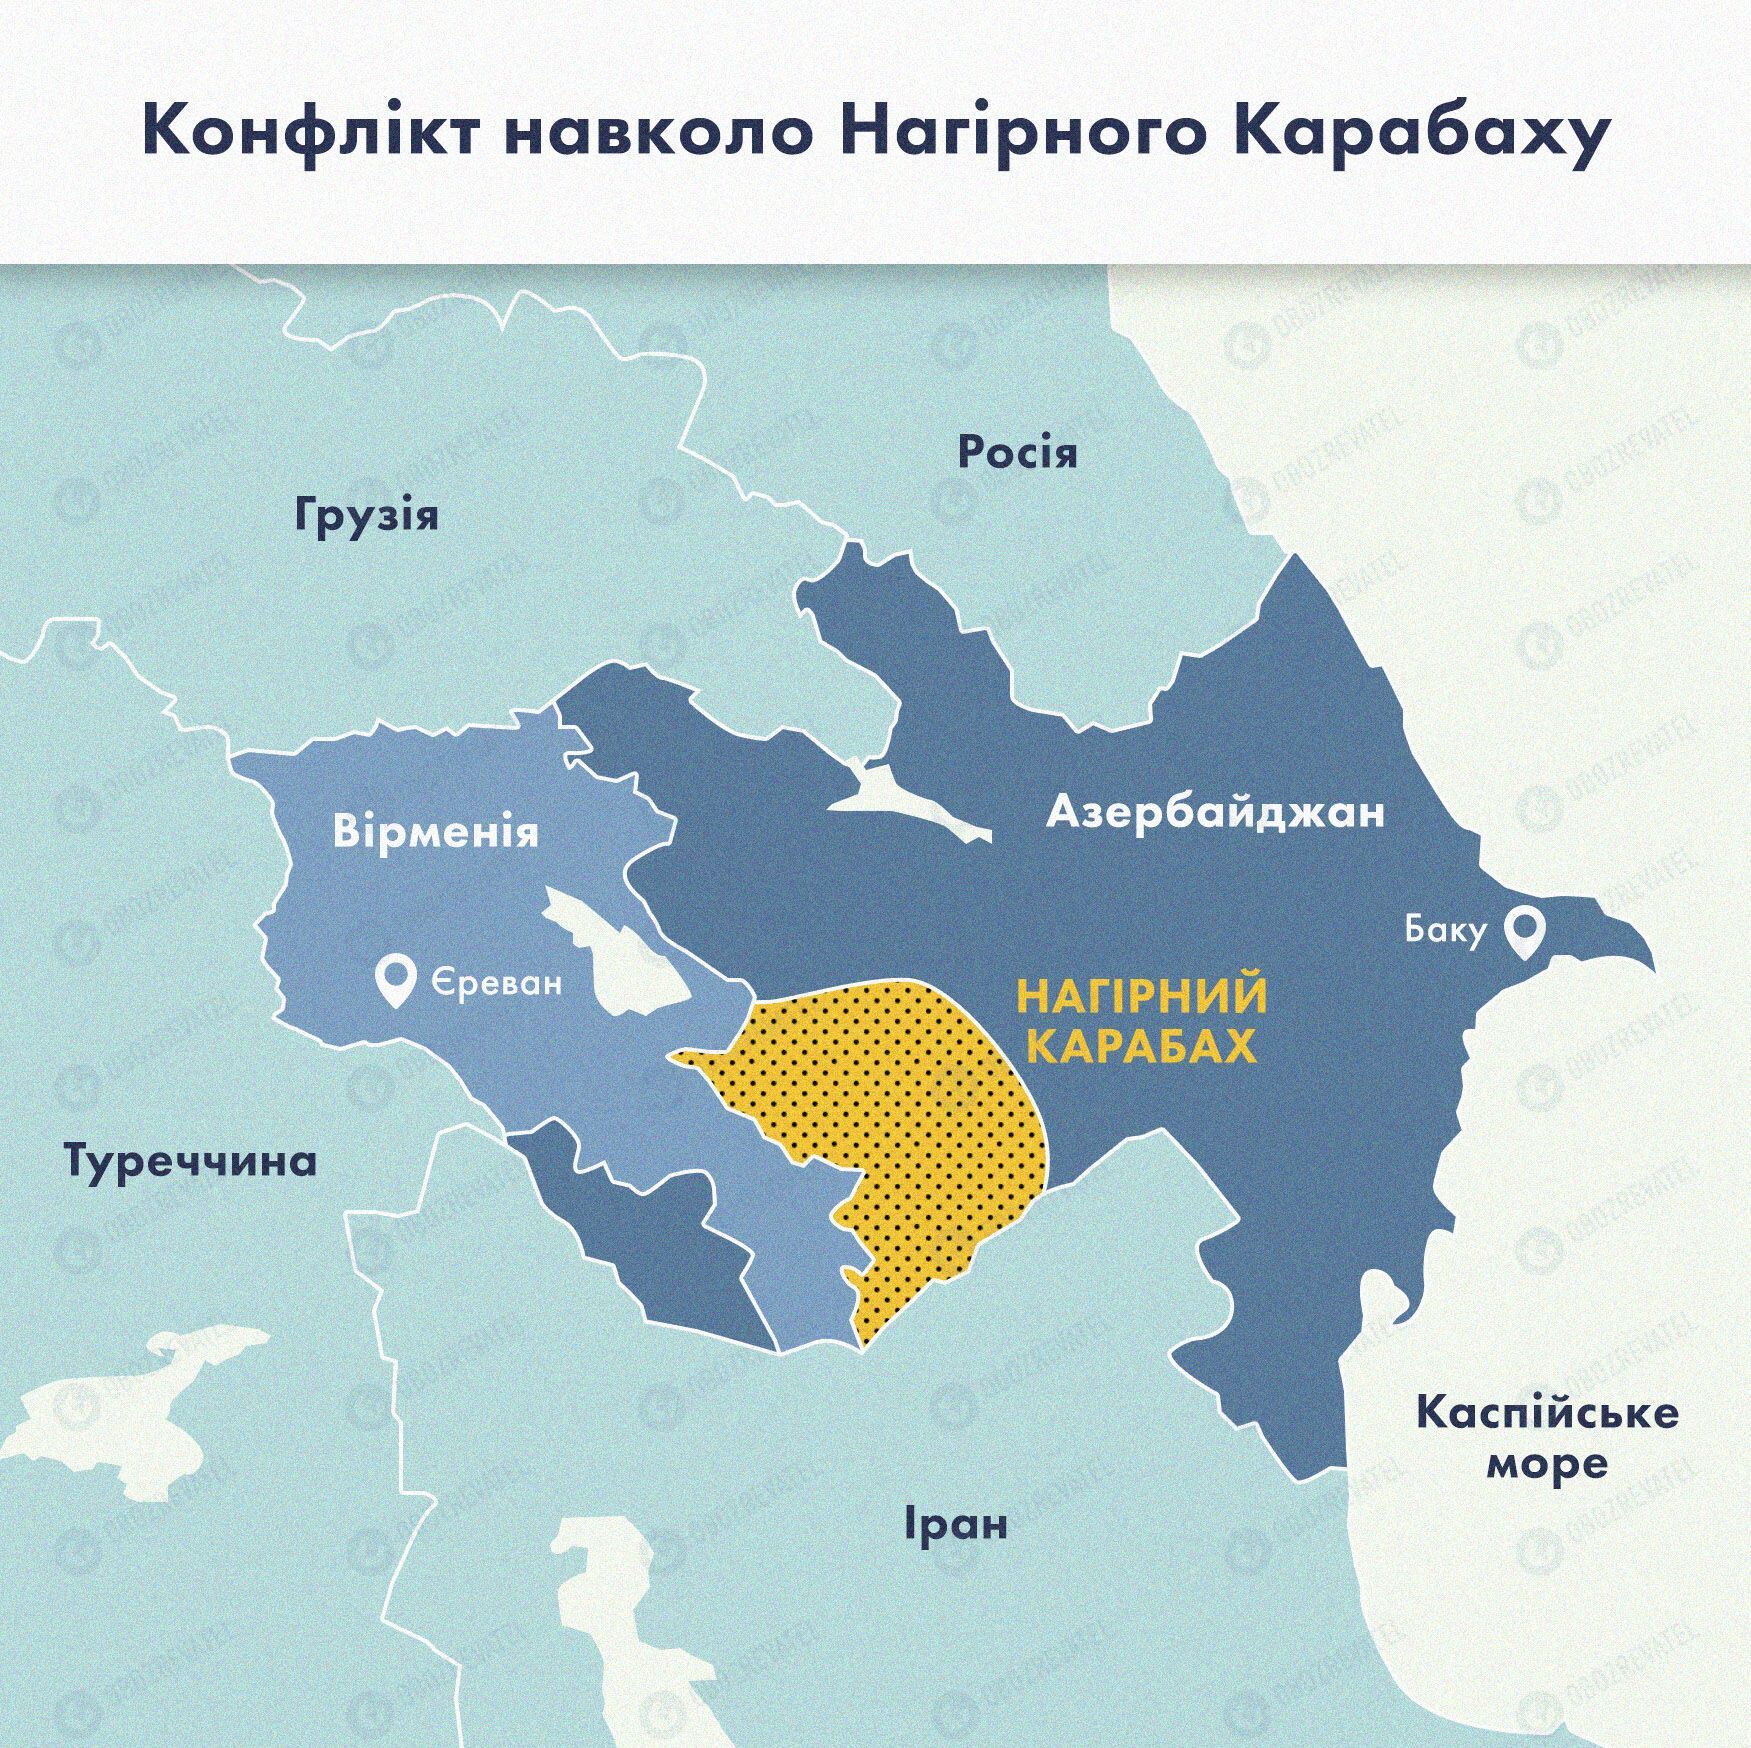 Карта конфликта вокруг Нагорного Карабаха